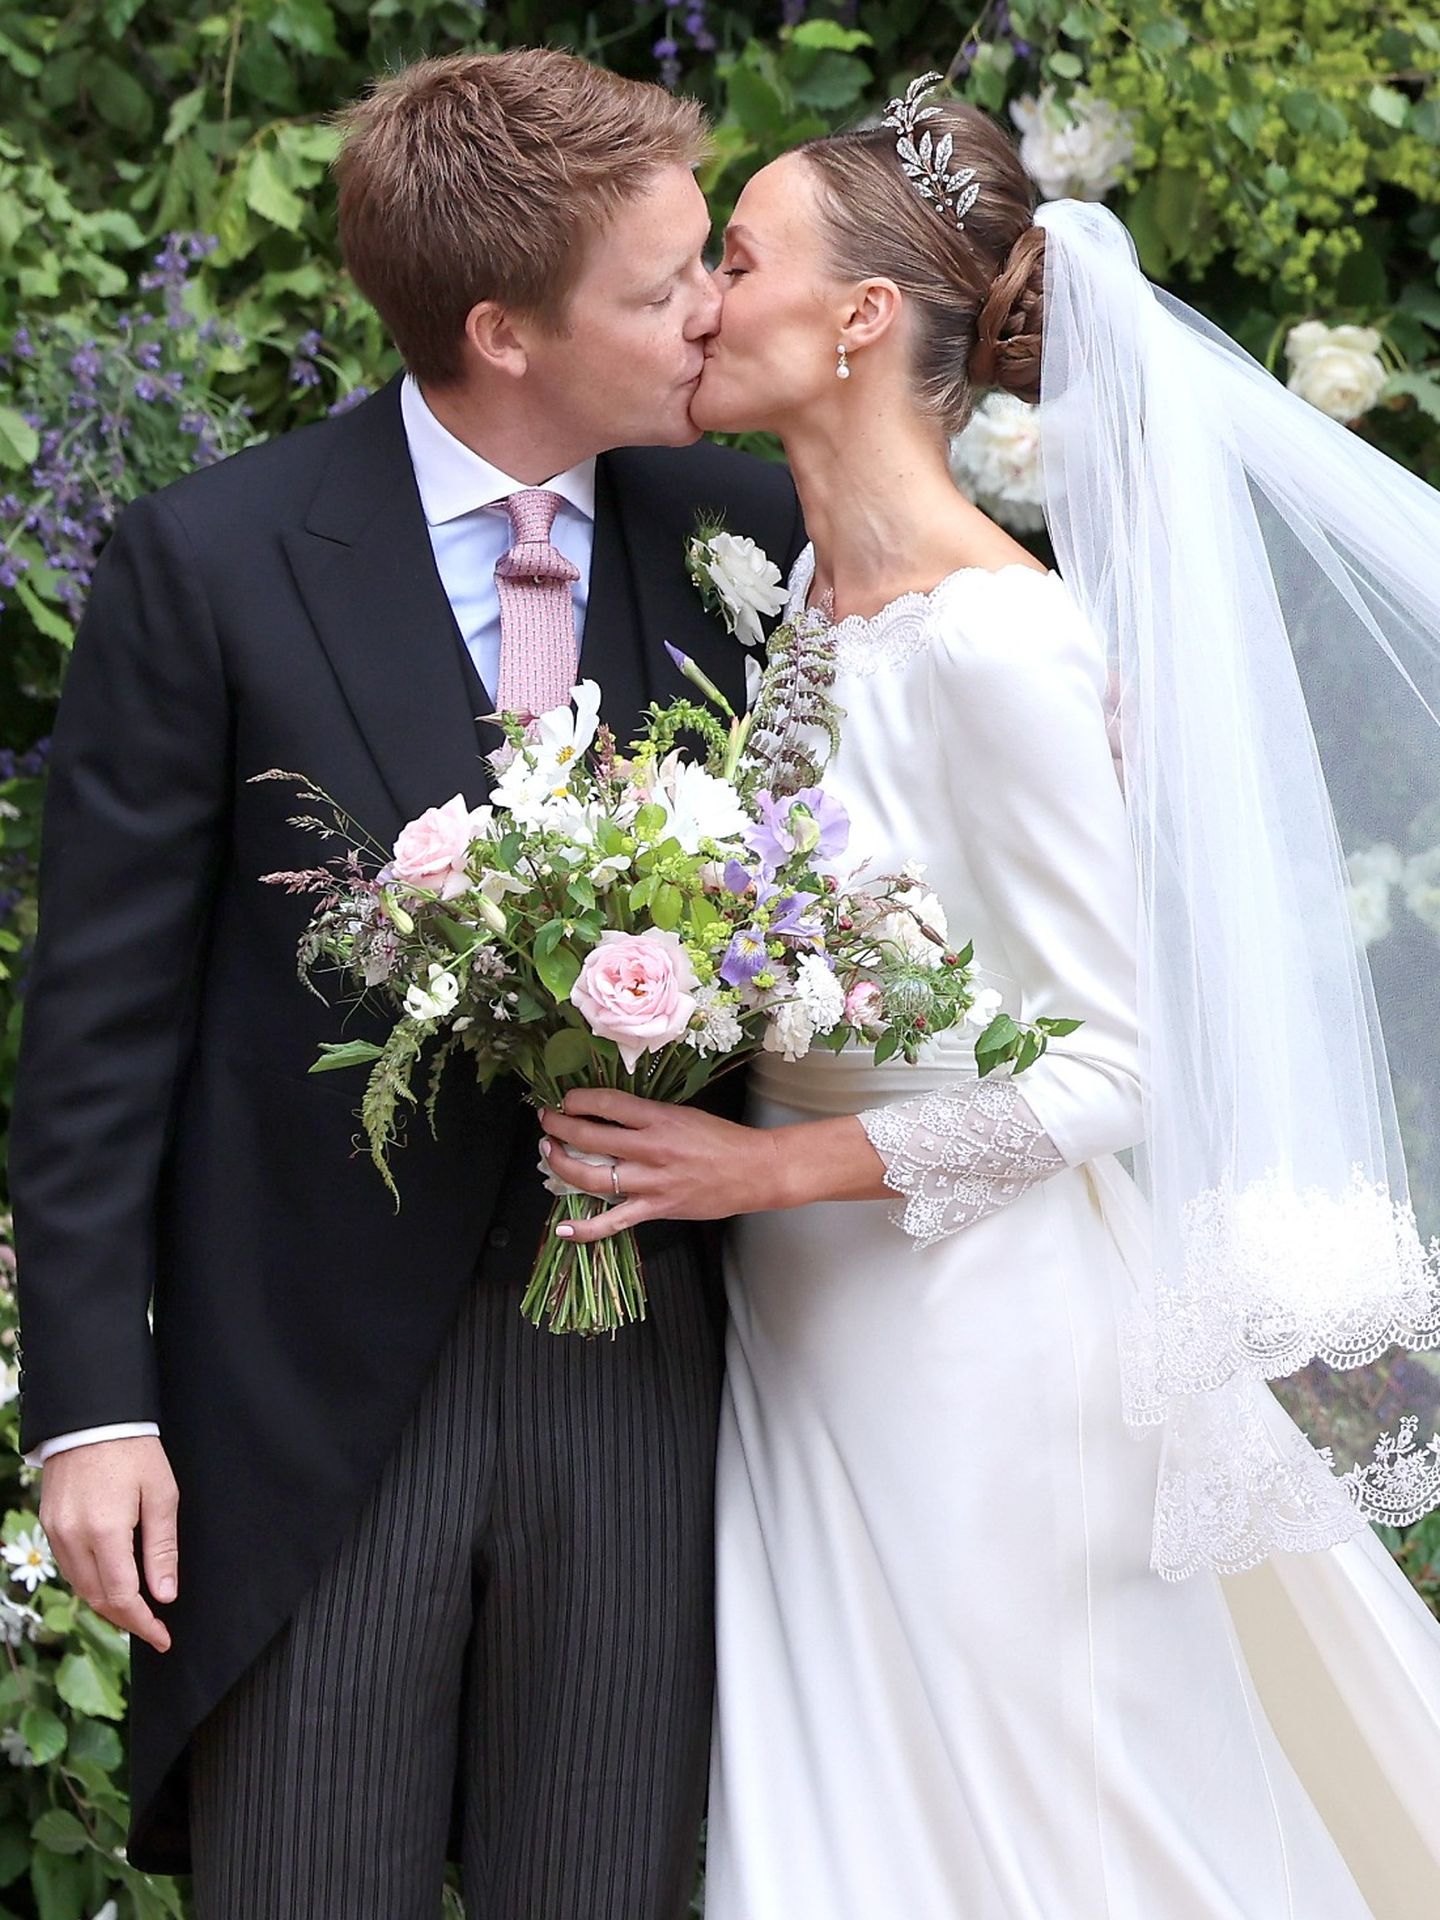 La pareja de recién casados se besa tras su boda. (Getty)